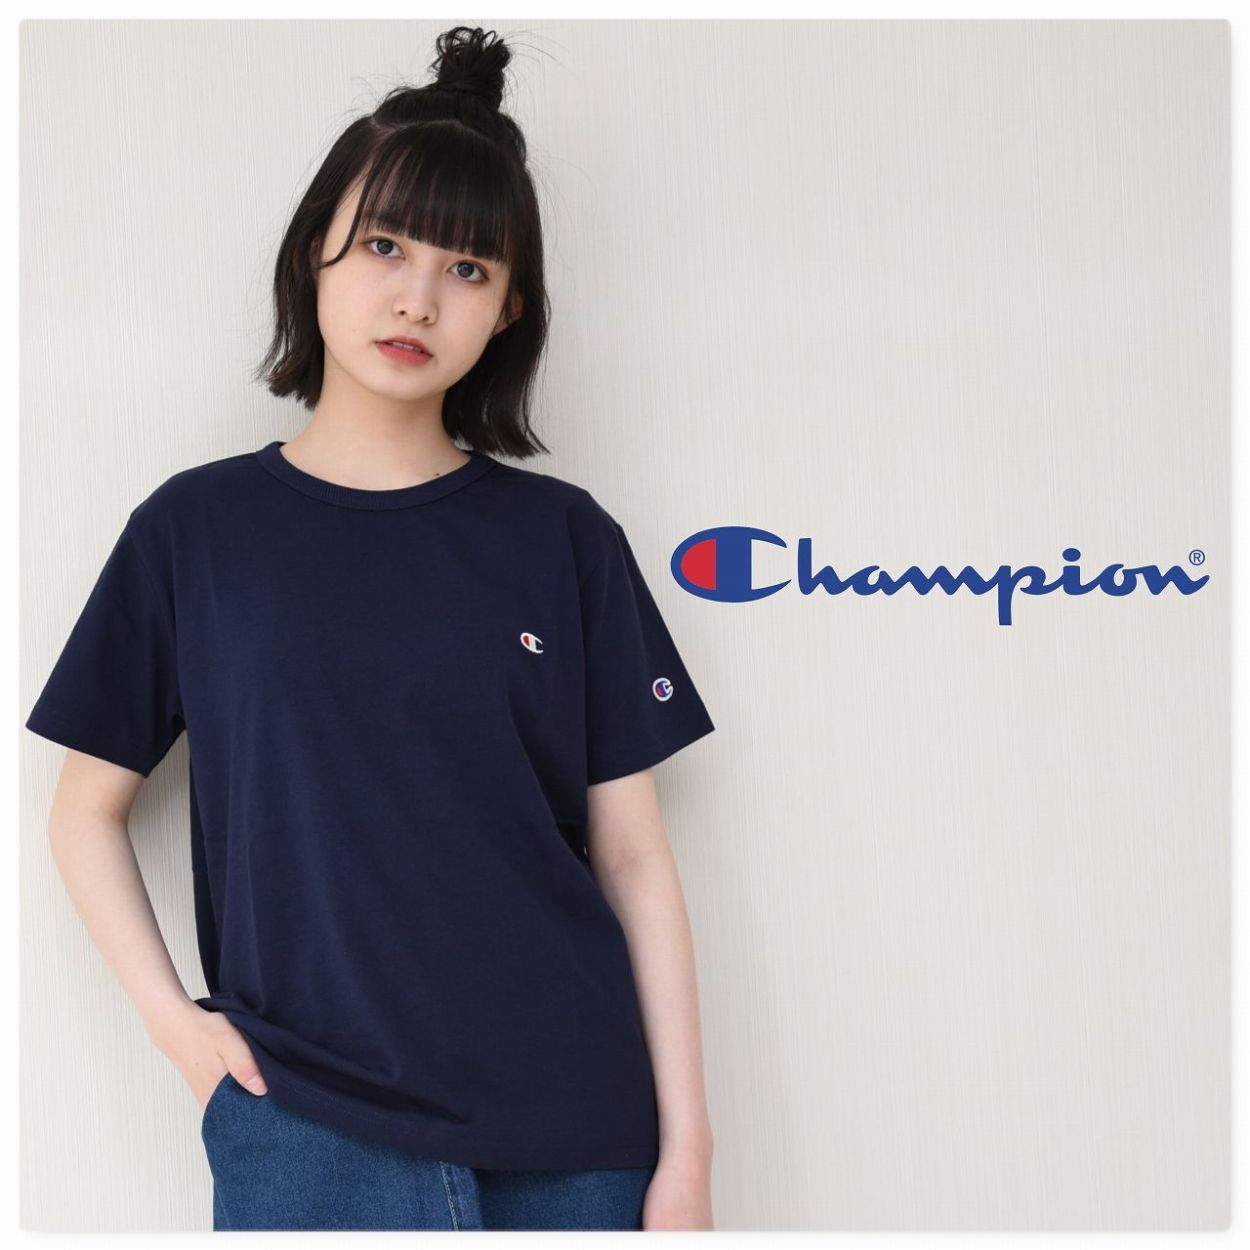 子供服 Tシャツ チャンピオン champion 国内正規品 半袖 キッズ 胸ロゴ